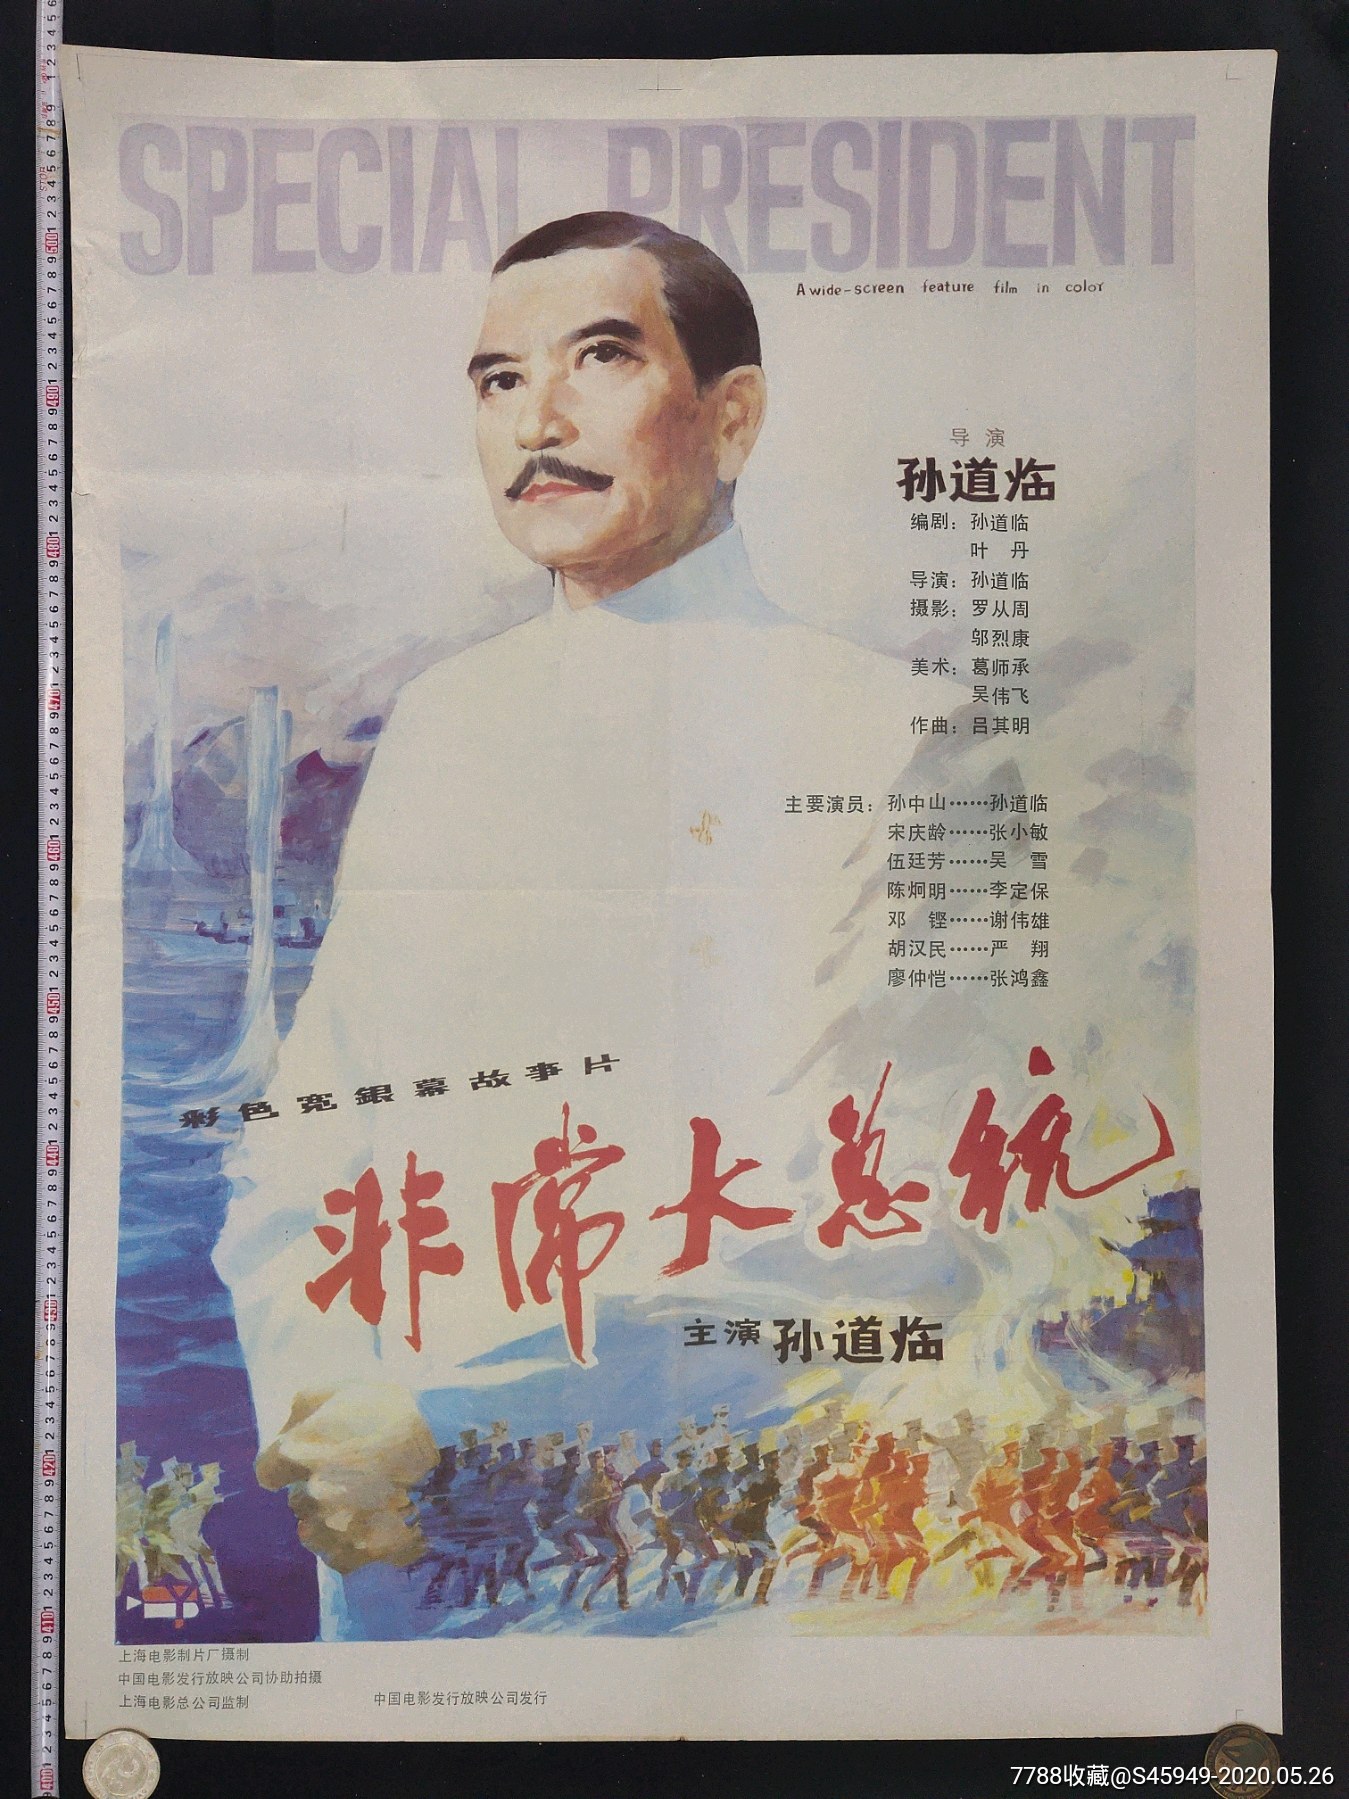 上海电影制片厂摄制《非常大总统》电影海报(大全开)